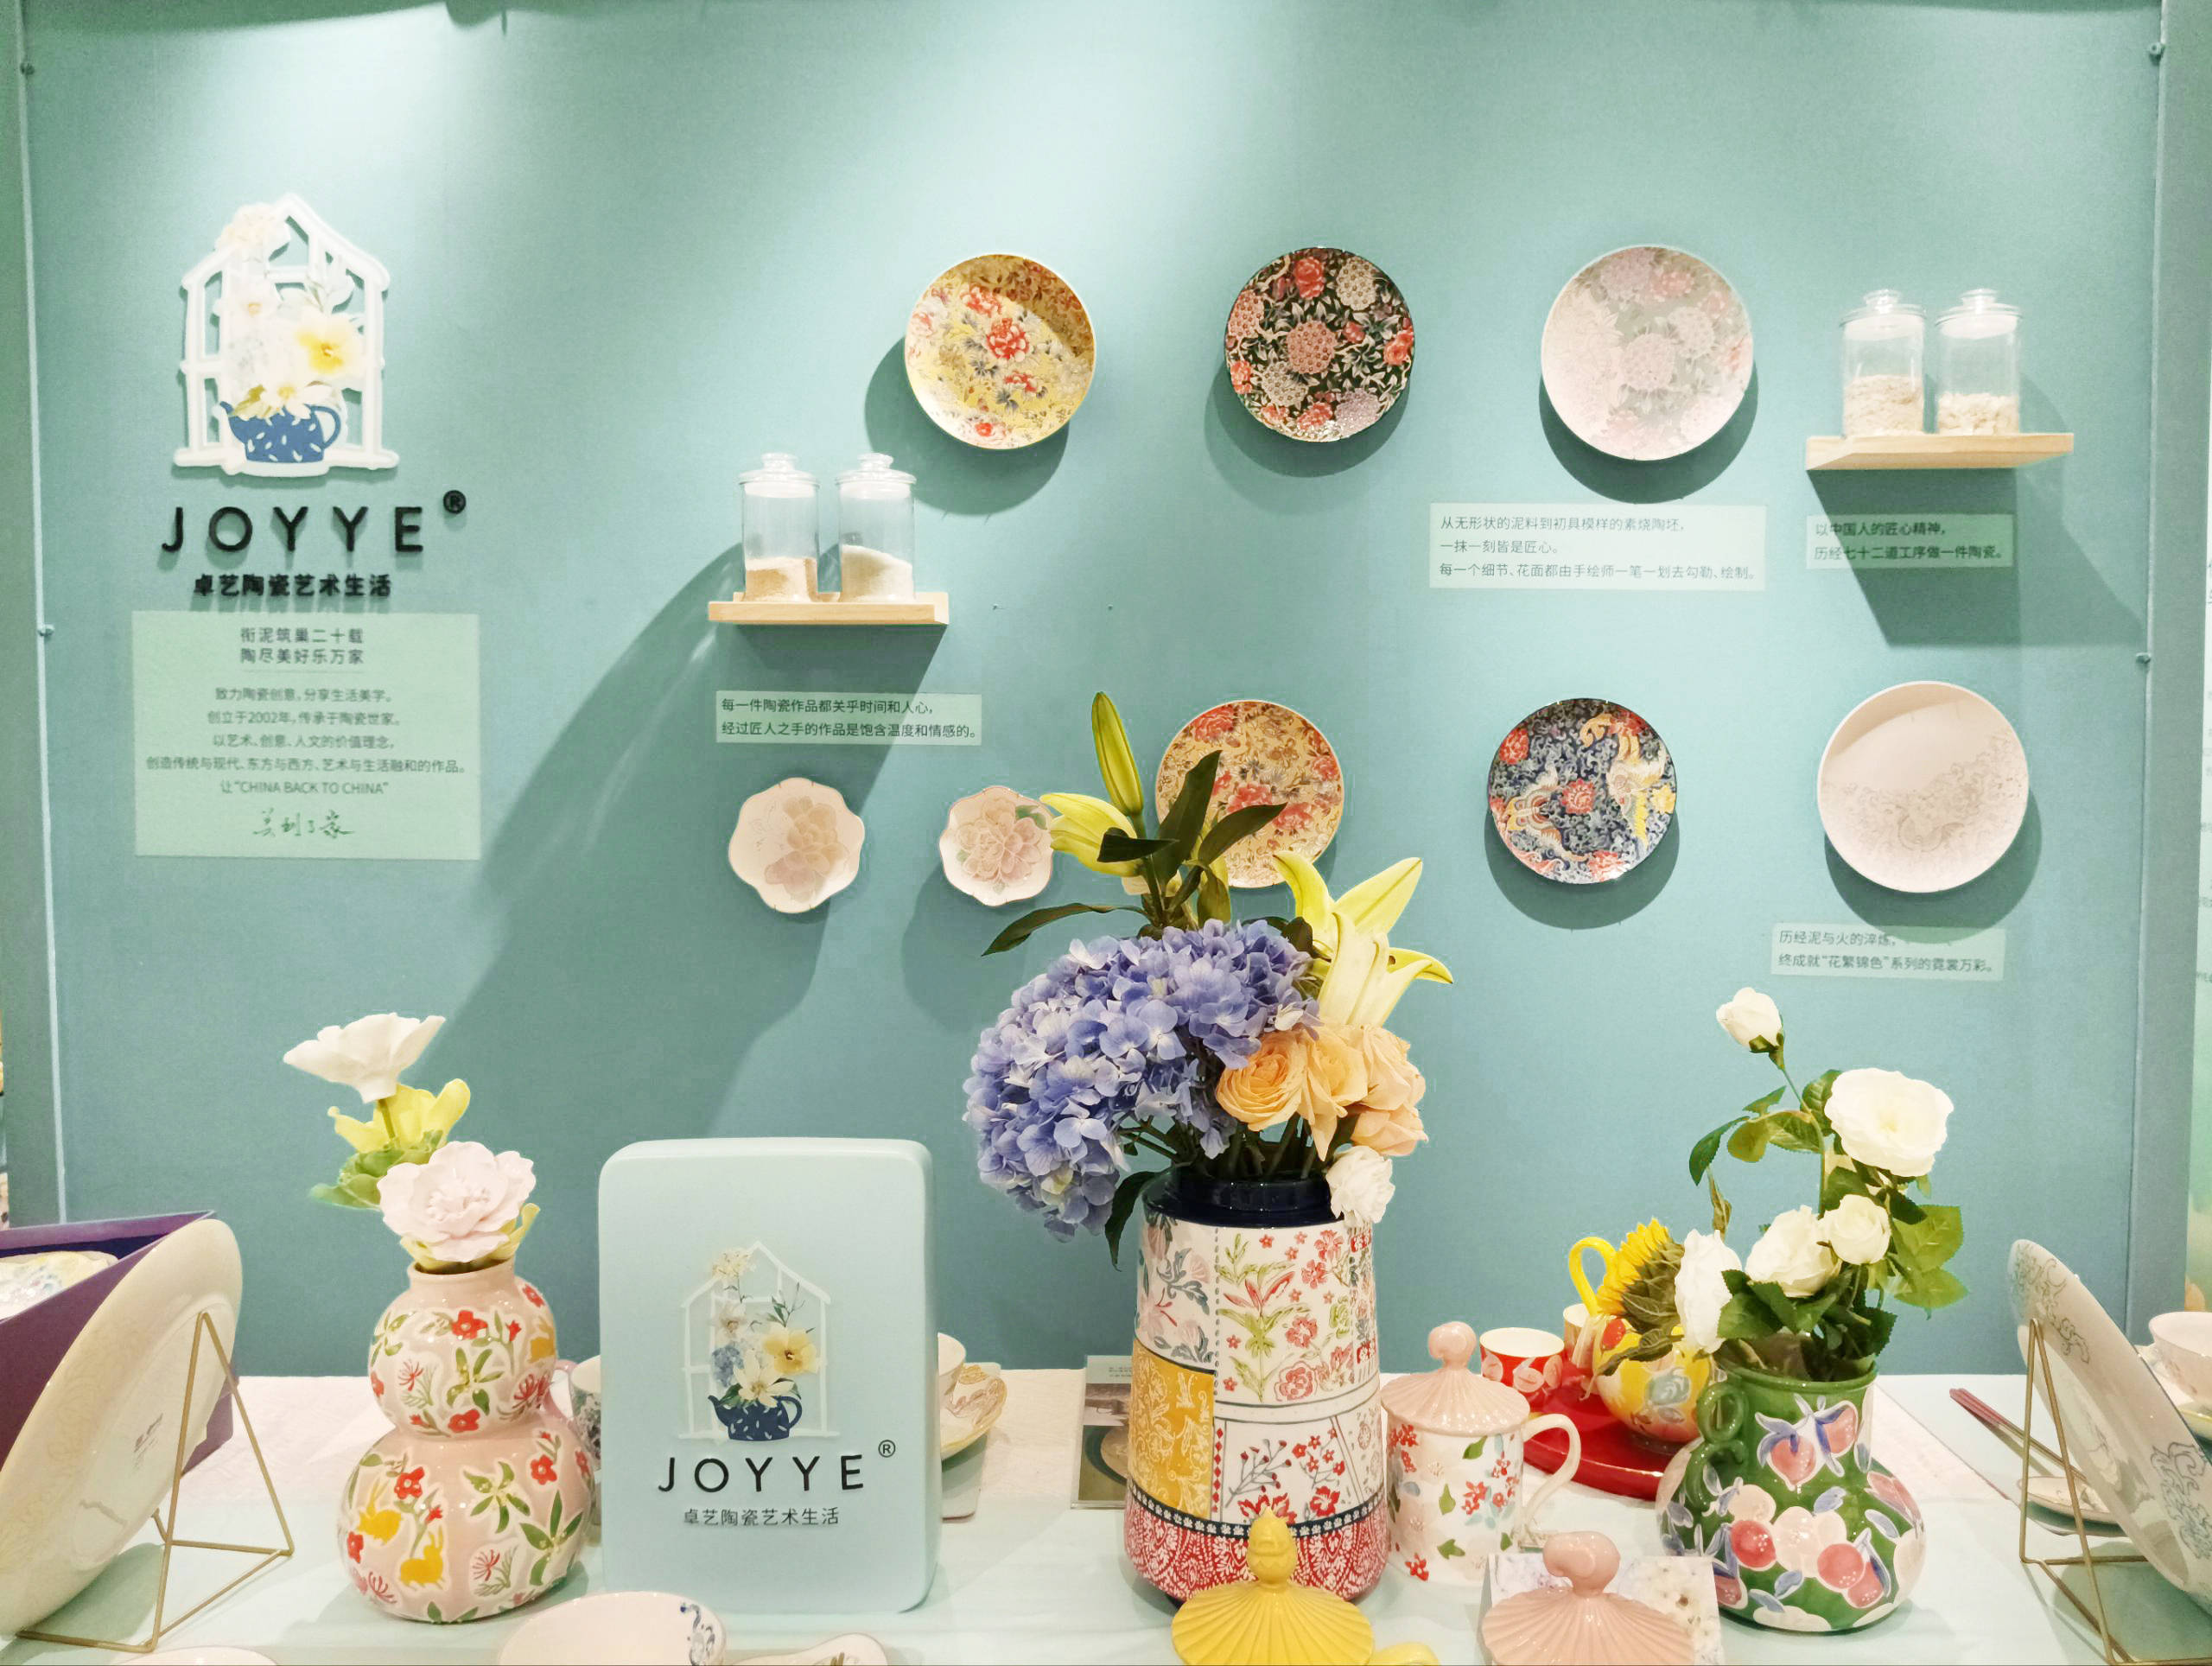 第12届上海国际尚品家居展，JOYYE卓艺陶瓷艺术生活品牌携重磅新品惊艳亮相 